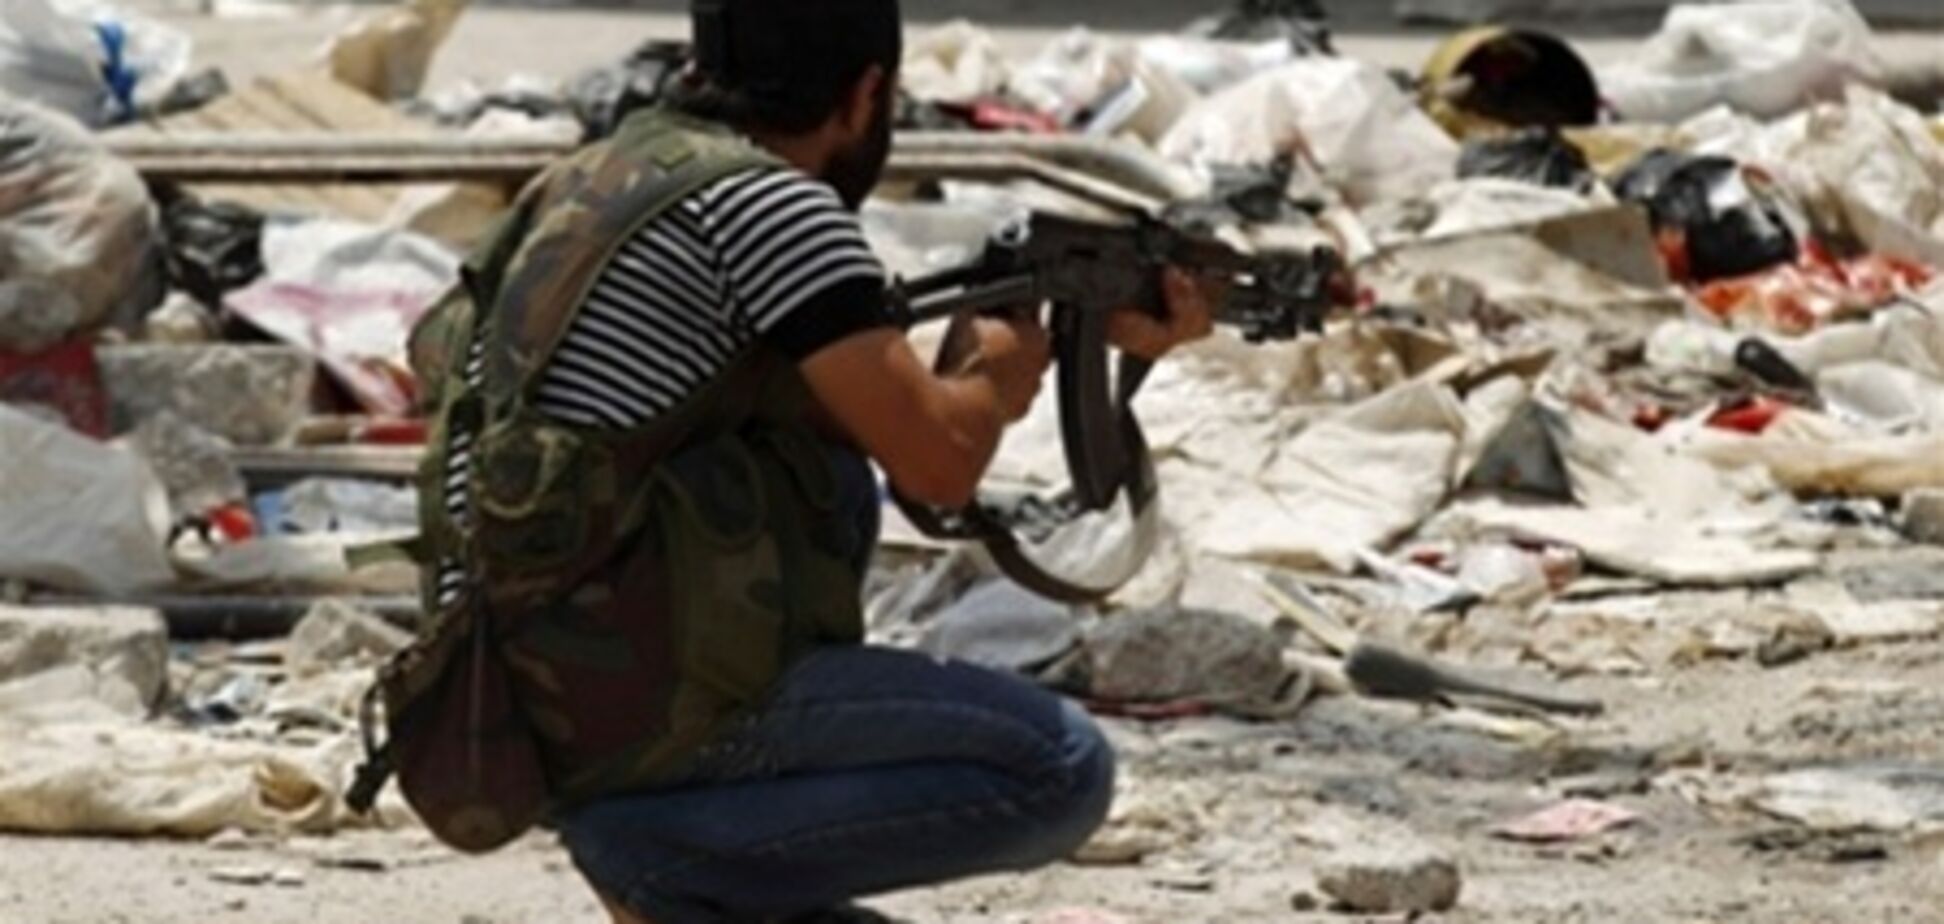 ЕС продлит эмбарго на поставки оружия в Сирию - СМИ